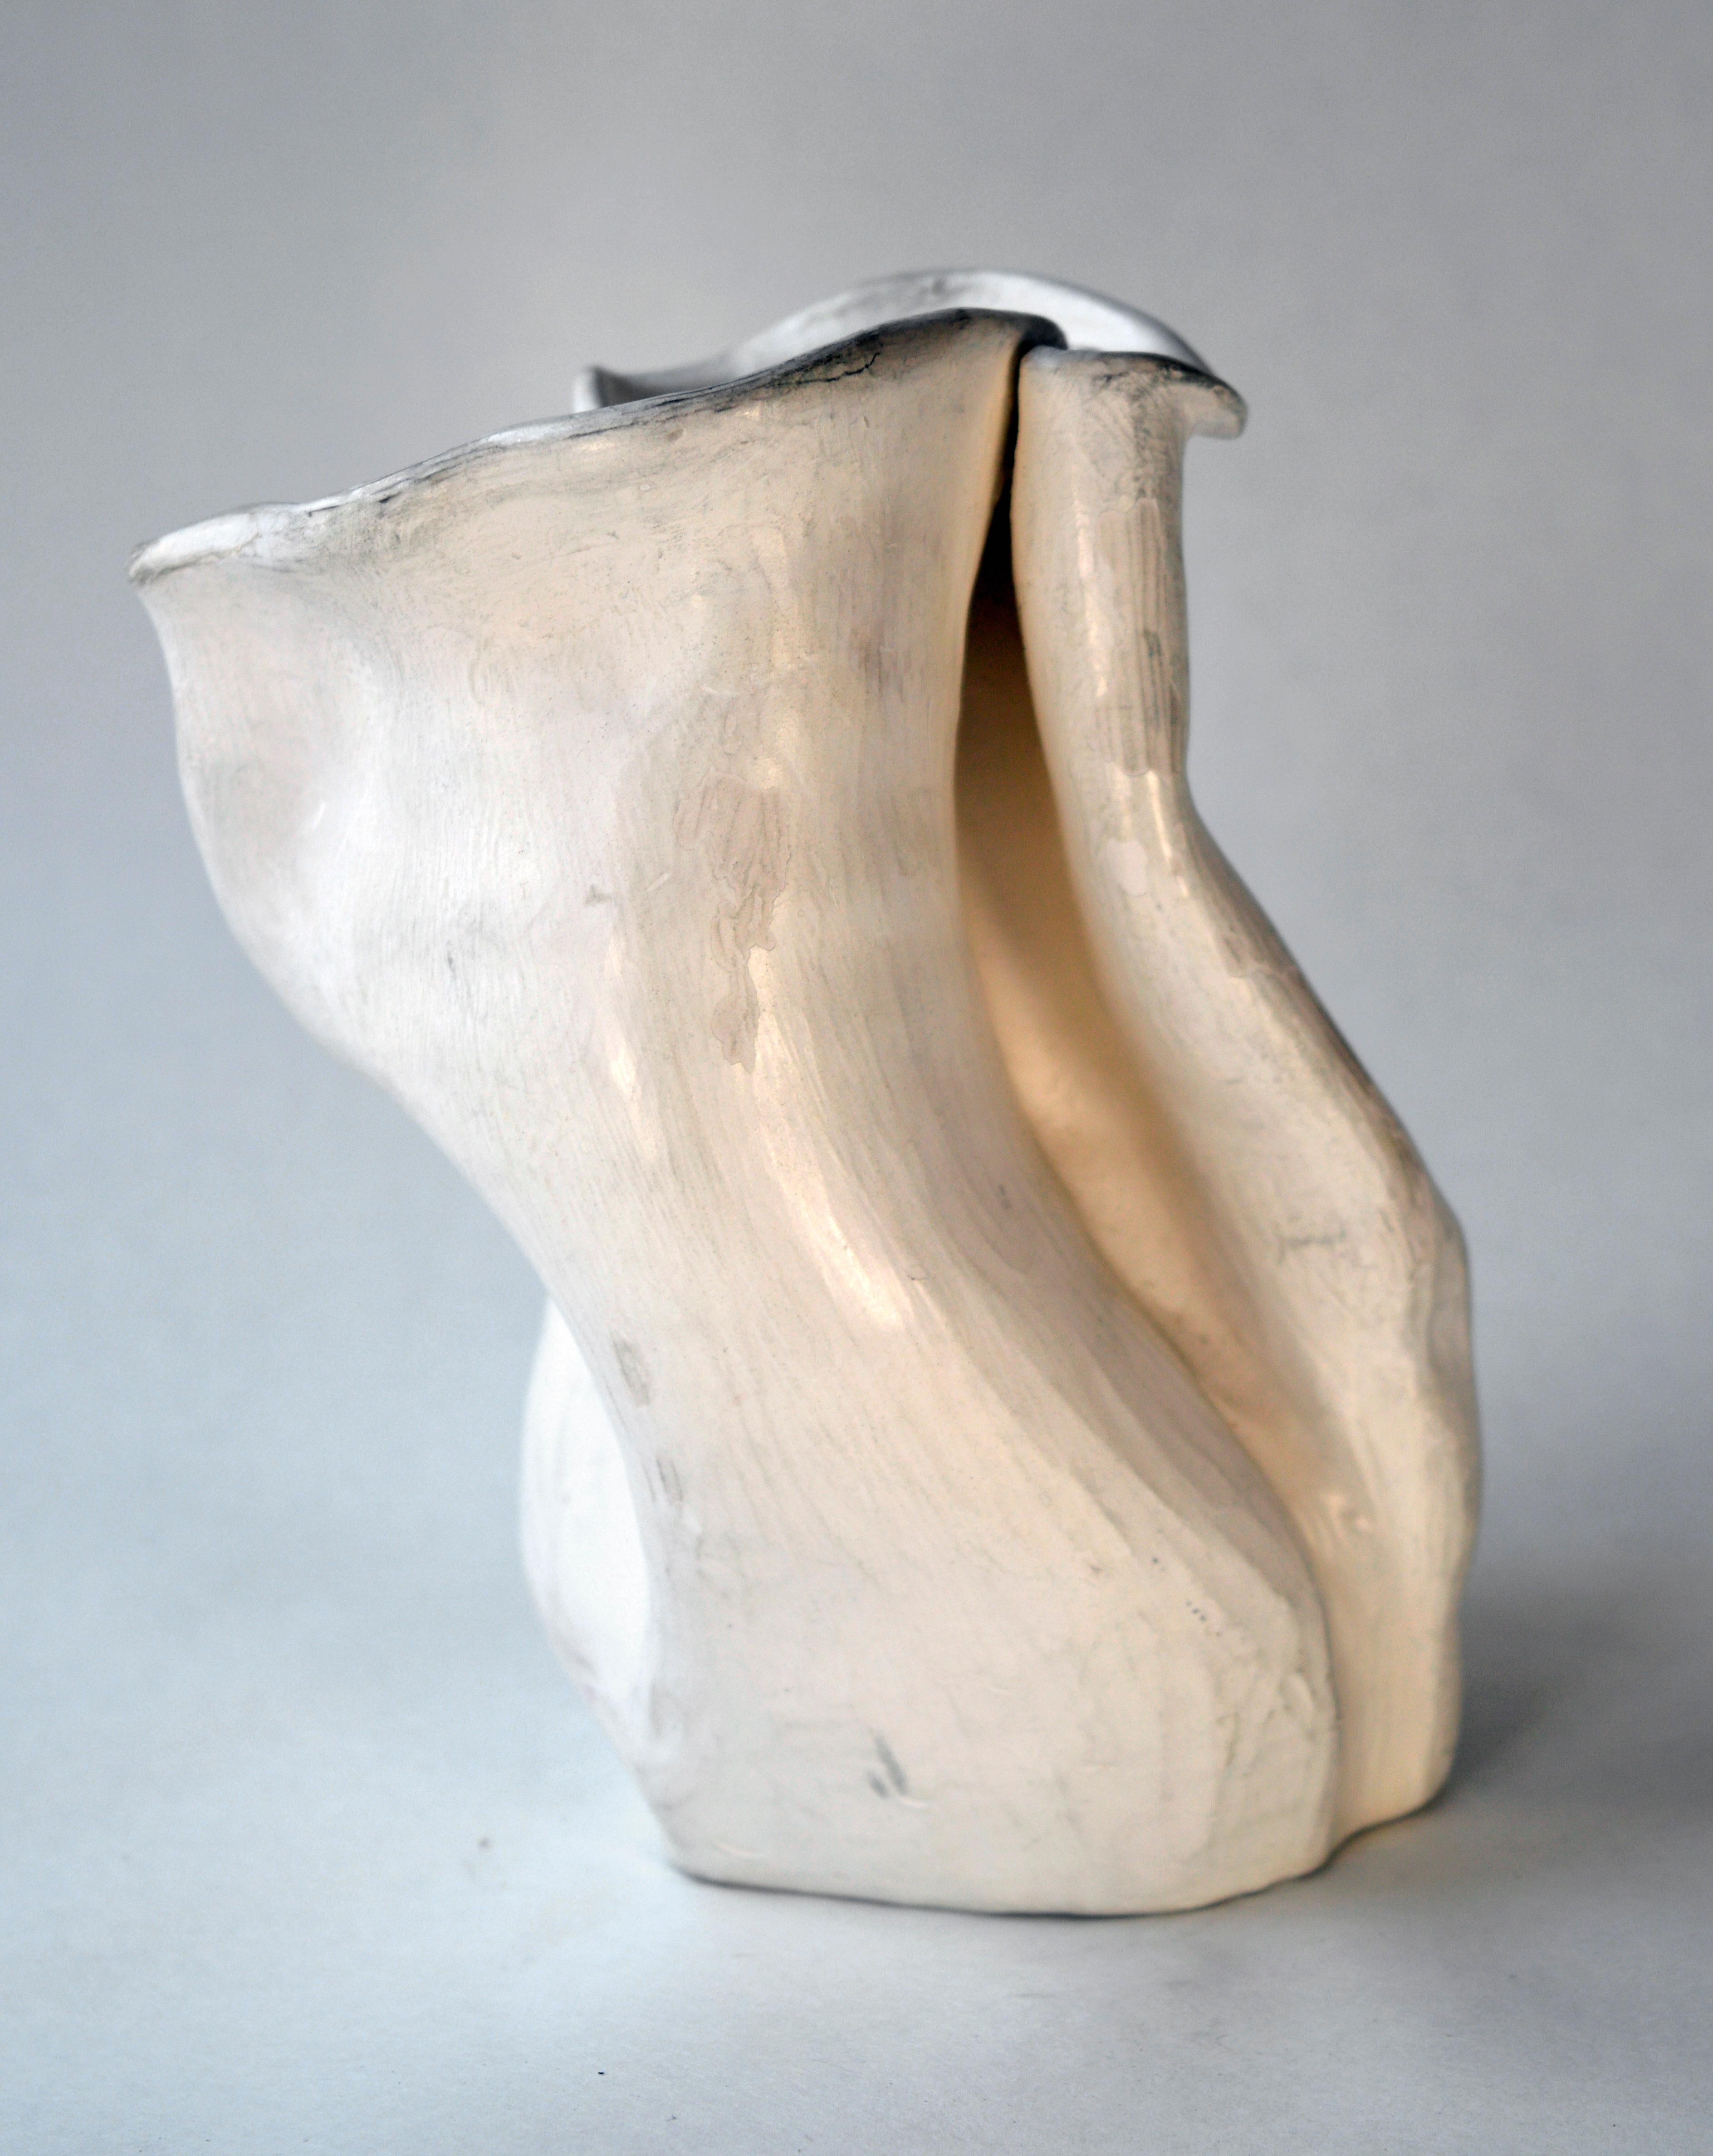 Abstrakte Keramikvase #2 aus den frühen 1940er Jahren nach George Ohr (Abstrakter Expressionismus), Sculpture, von Hamilton Achille Wolf